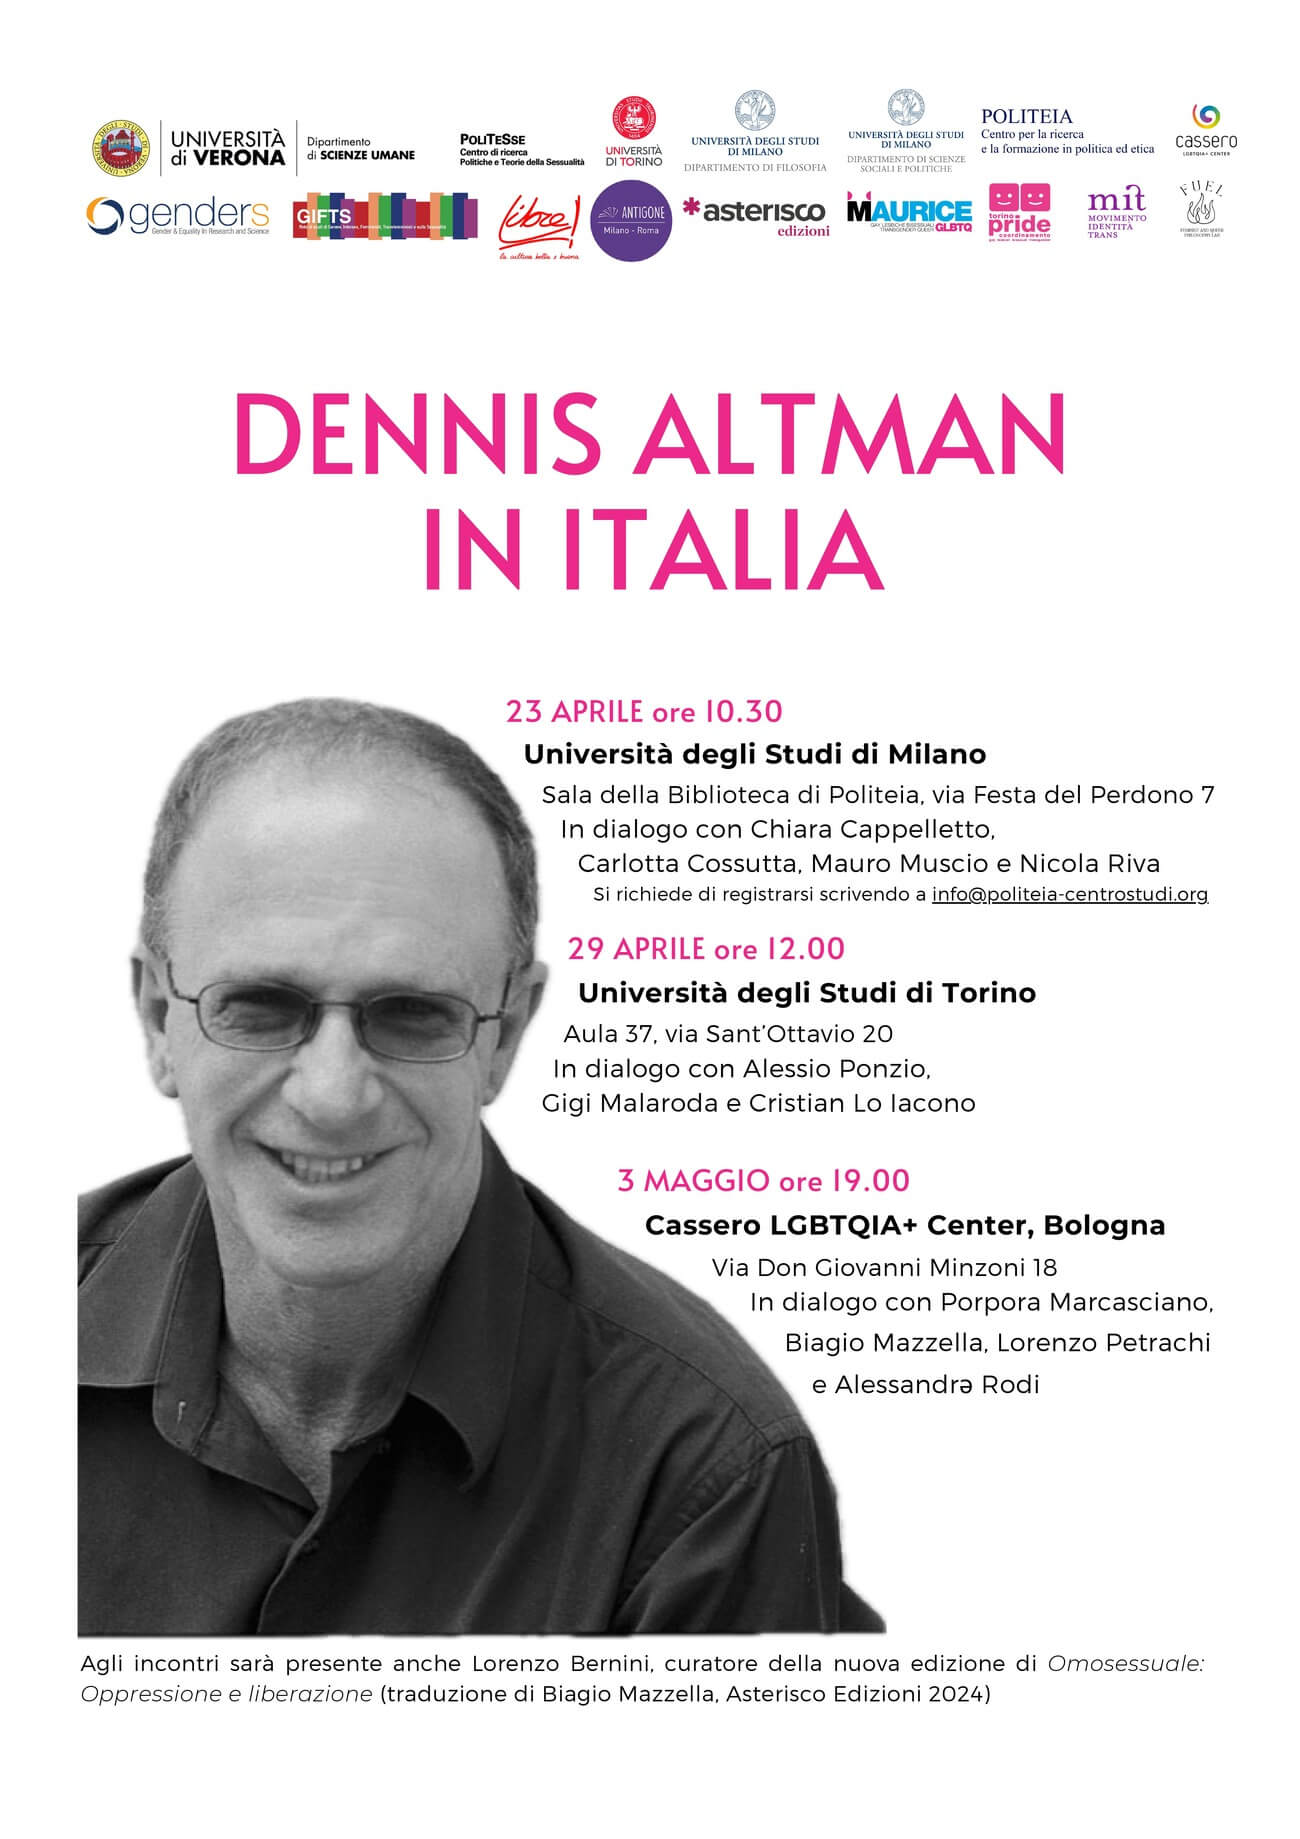 Dennis Altman in Italia, poster dei tre eventi in programma a Milano, Torino e Bologna.